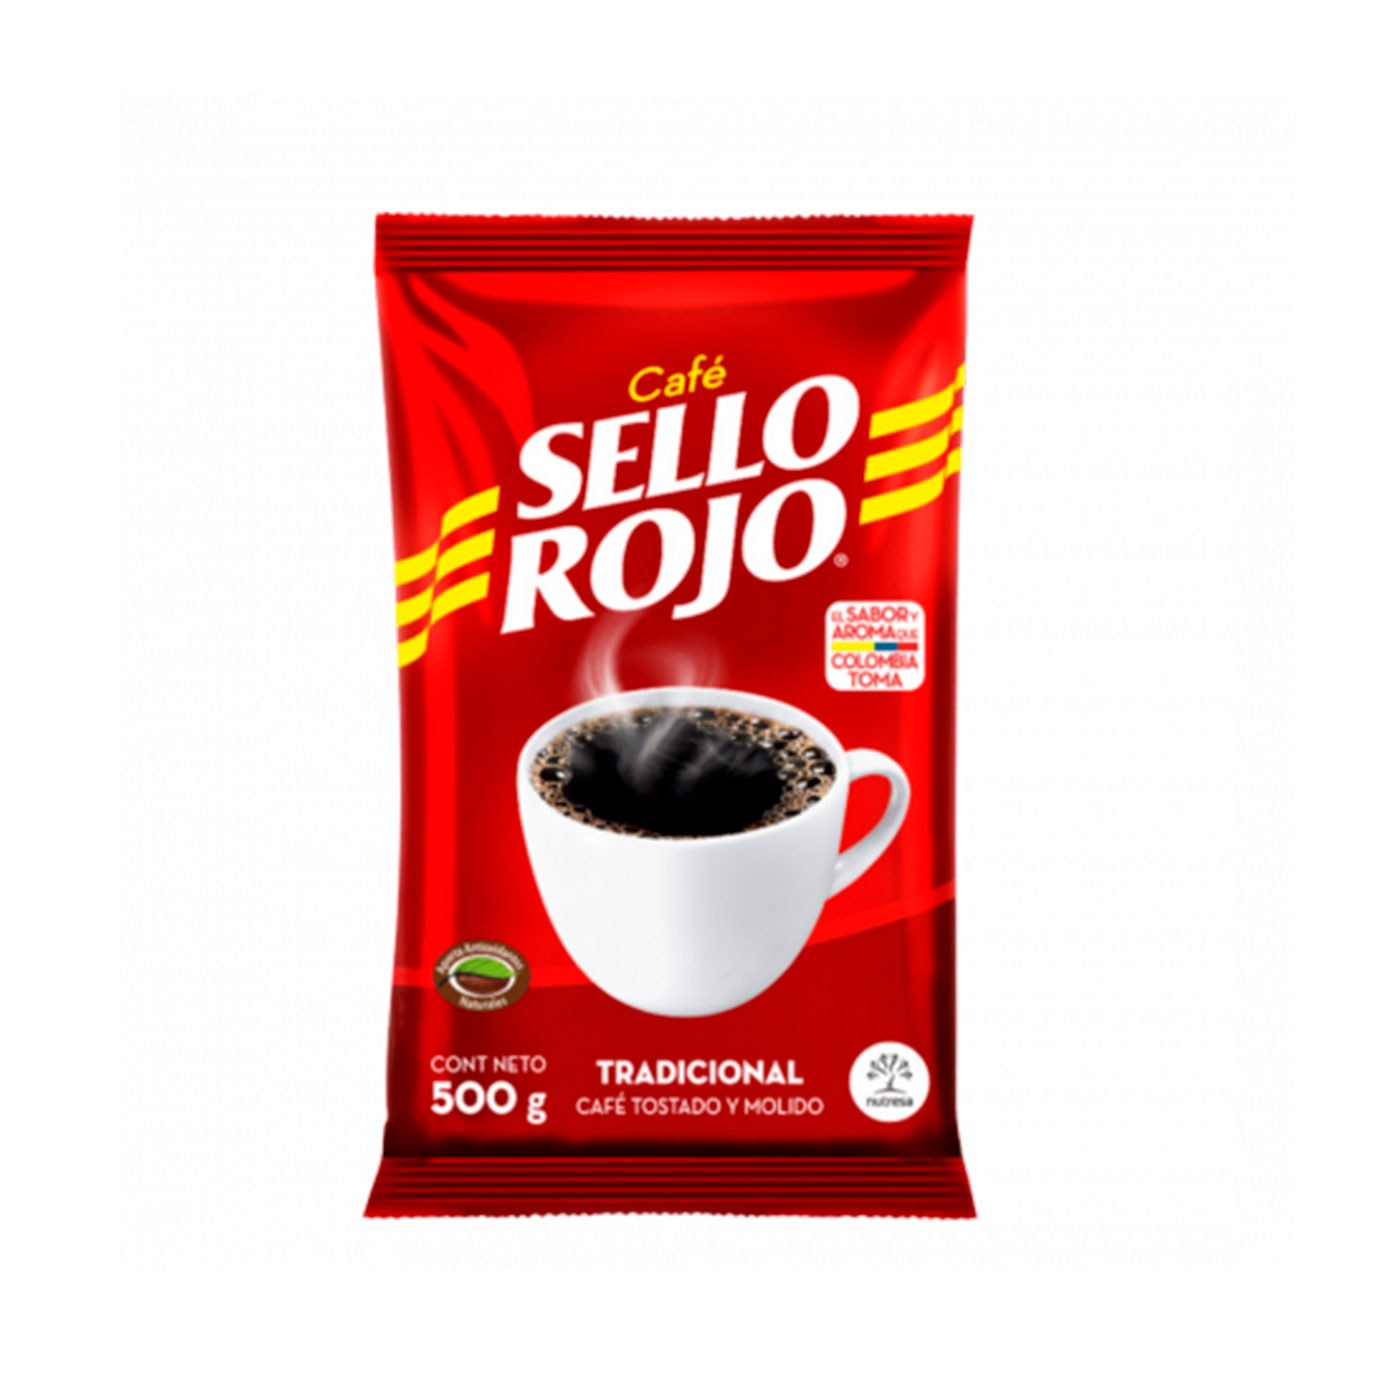  Café Sello Rojo Café molido descafeinado, Sabor equilibrado, Café  descafeinado molido 100% colombiano tostado oscuro